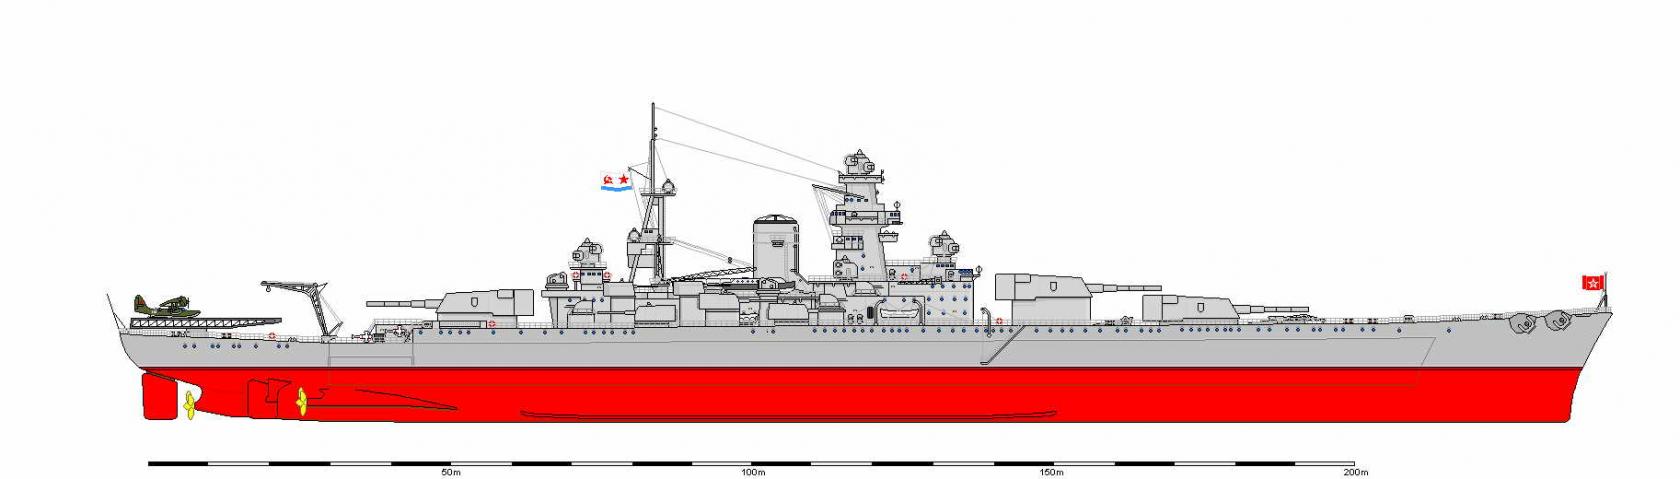 Линейные корабли типа «Советская Россия»